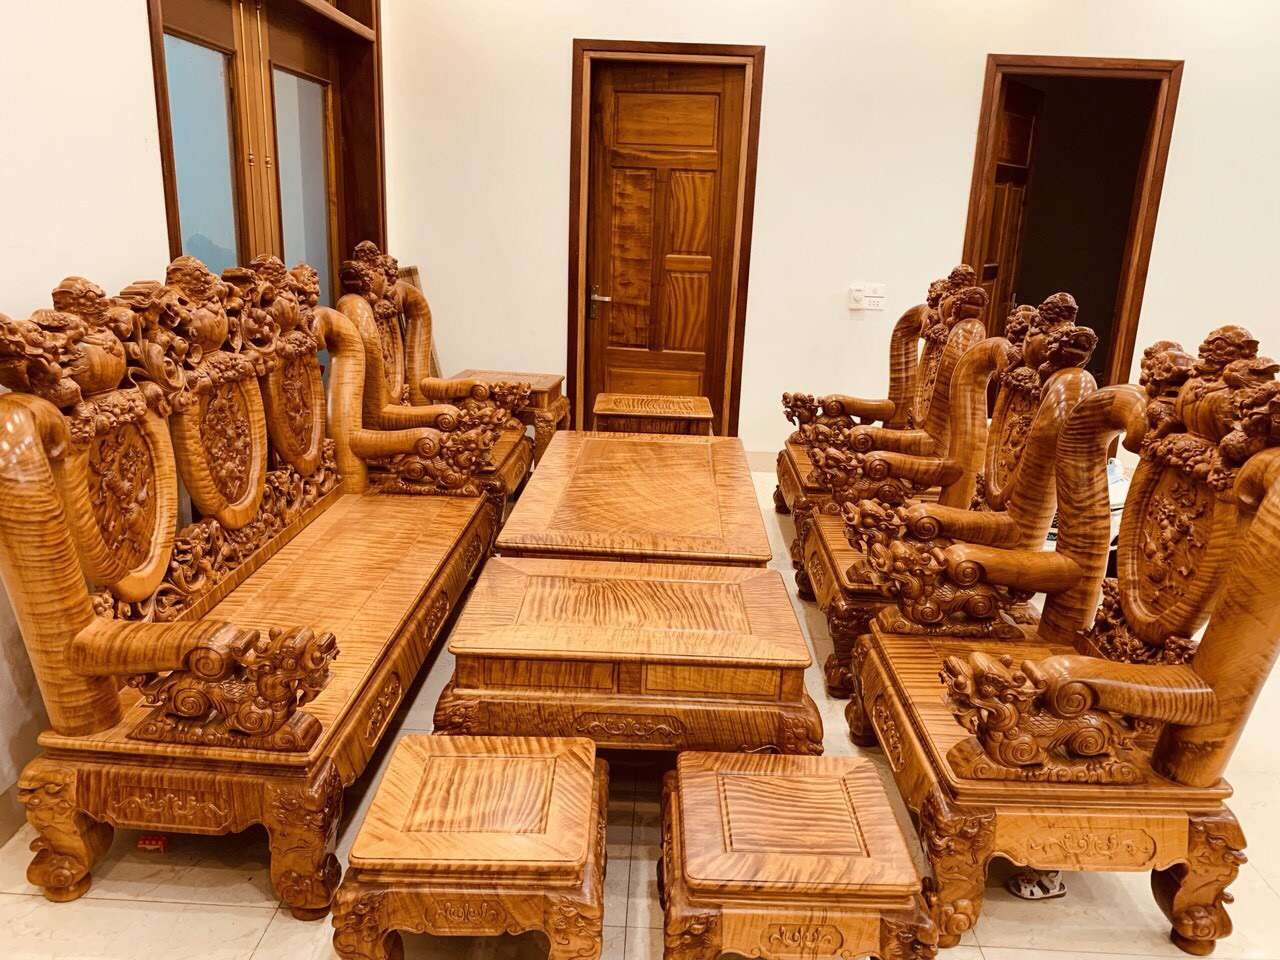 Bàn ghế làm từ cây gỗ Đinh Hương cũng là món đồ nội thất rất được ưa chuộng